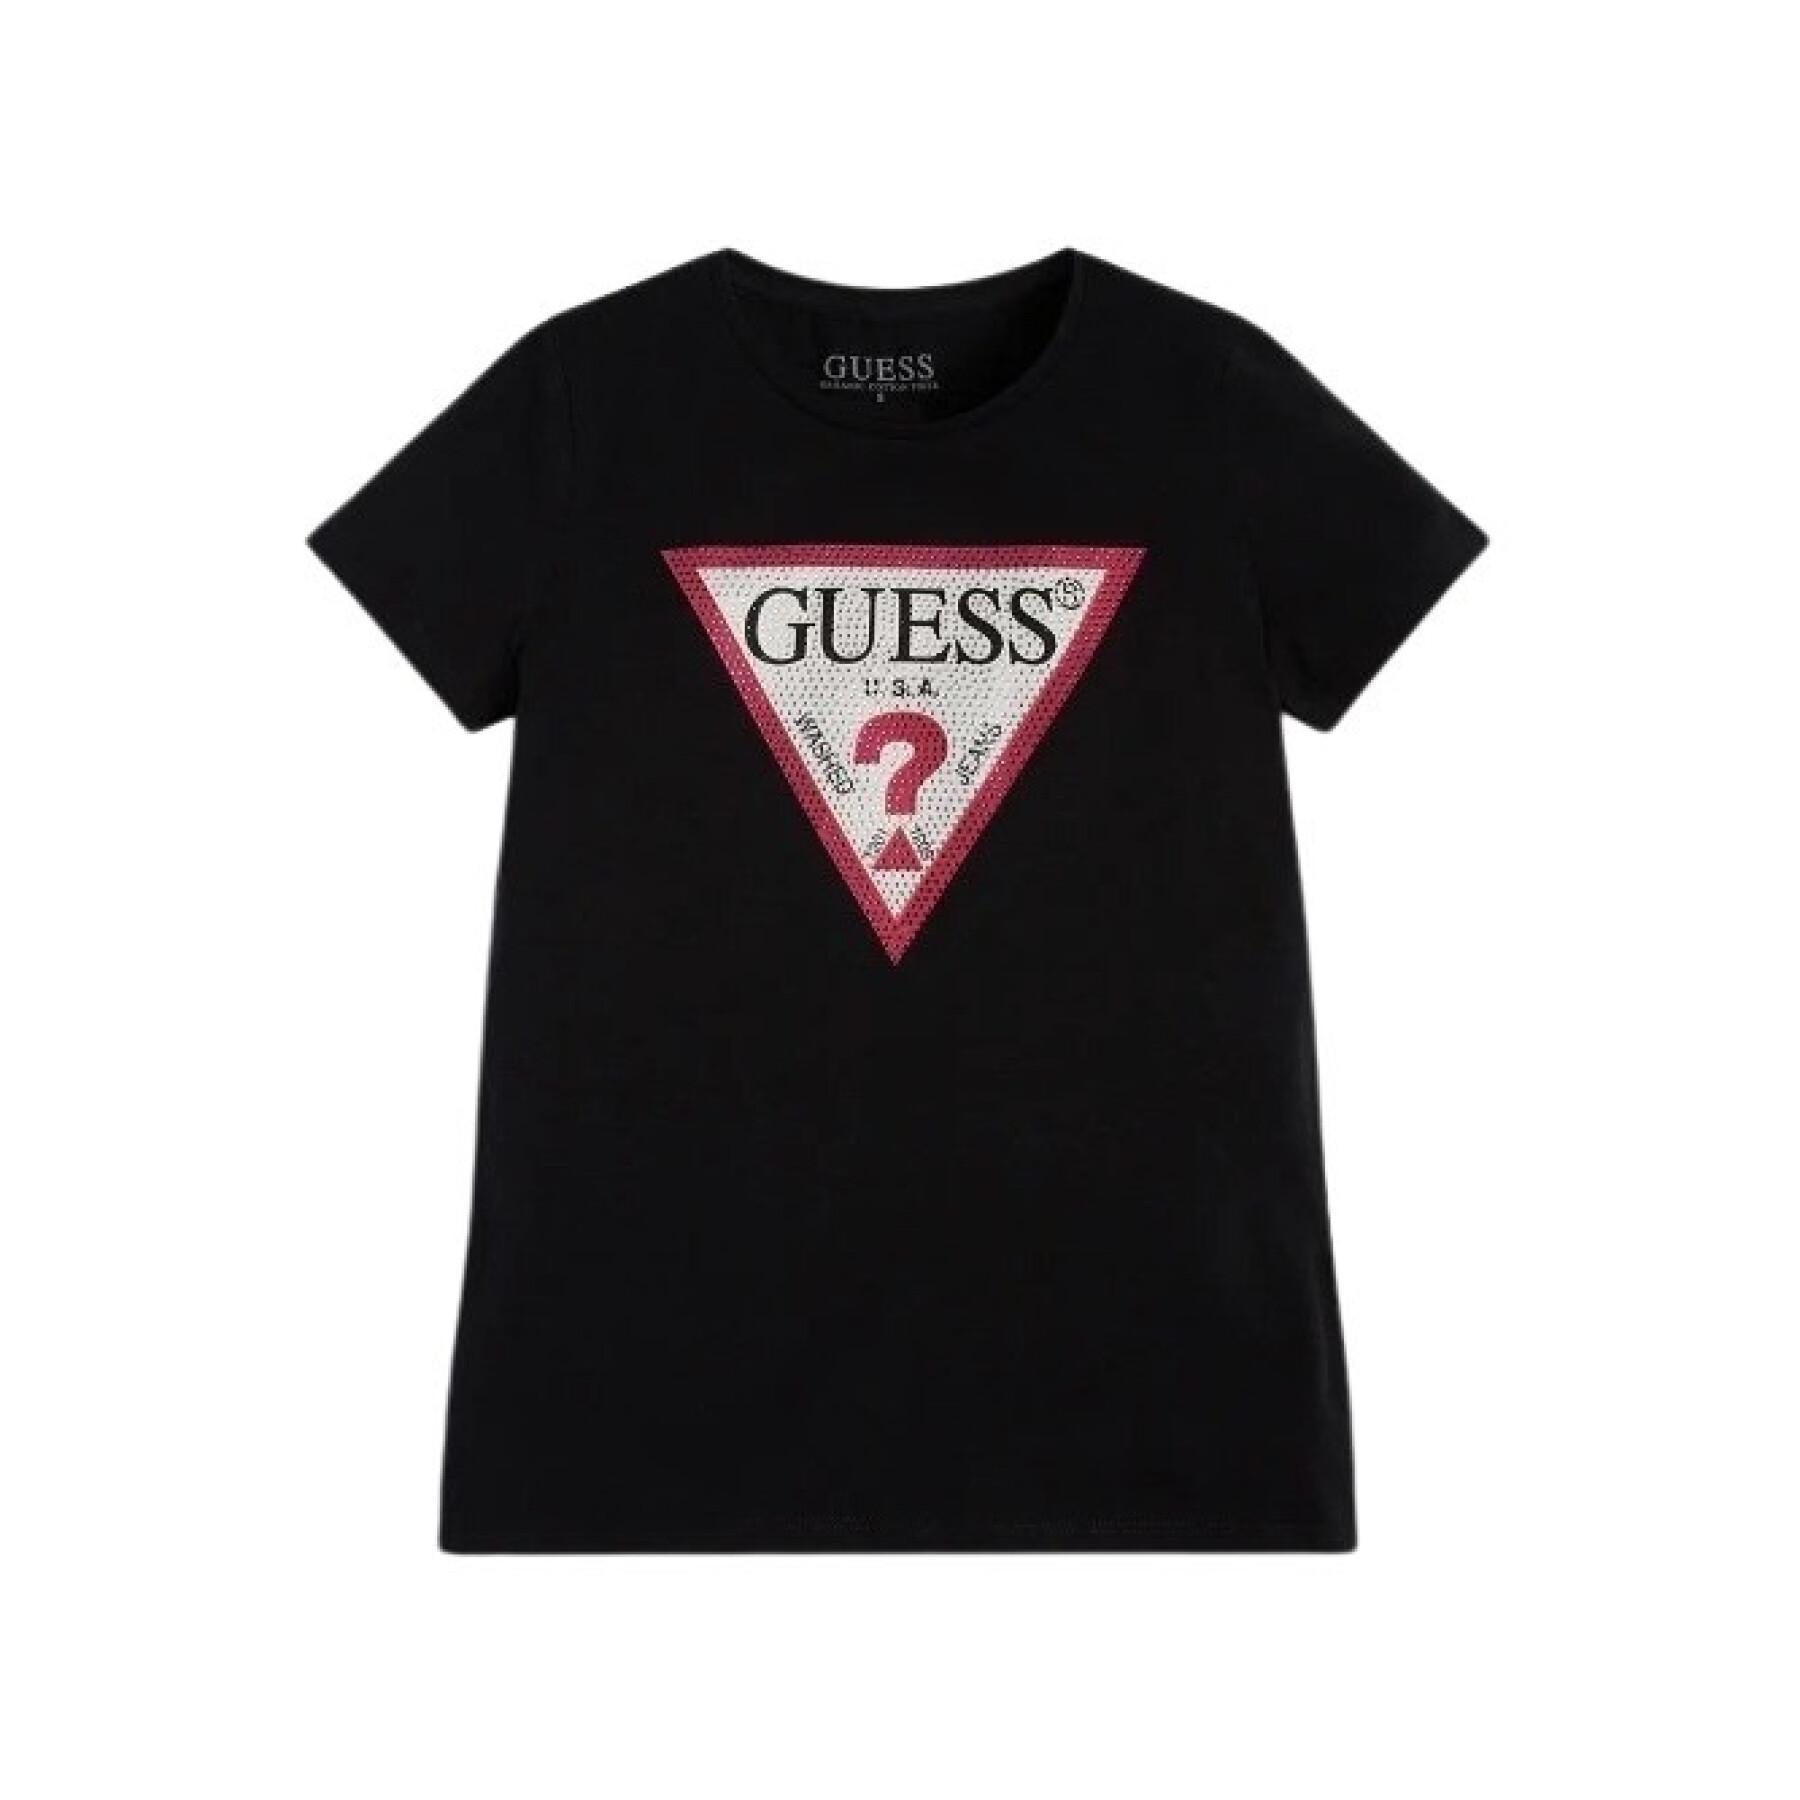 Mädchen-T-Shirt Guess